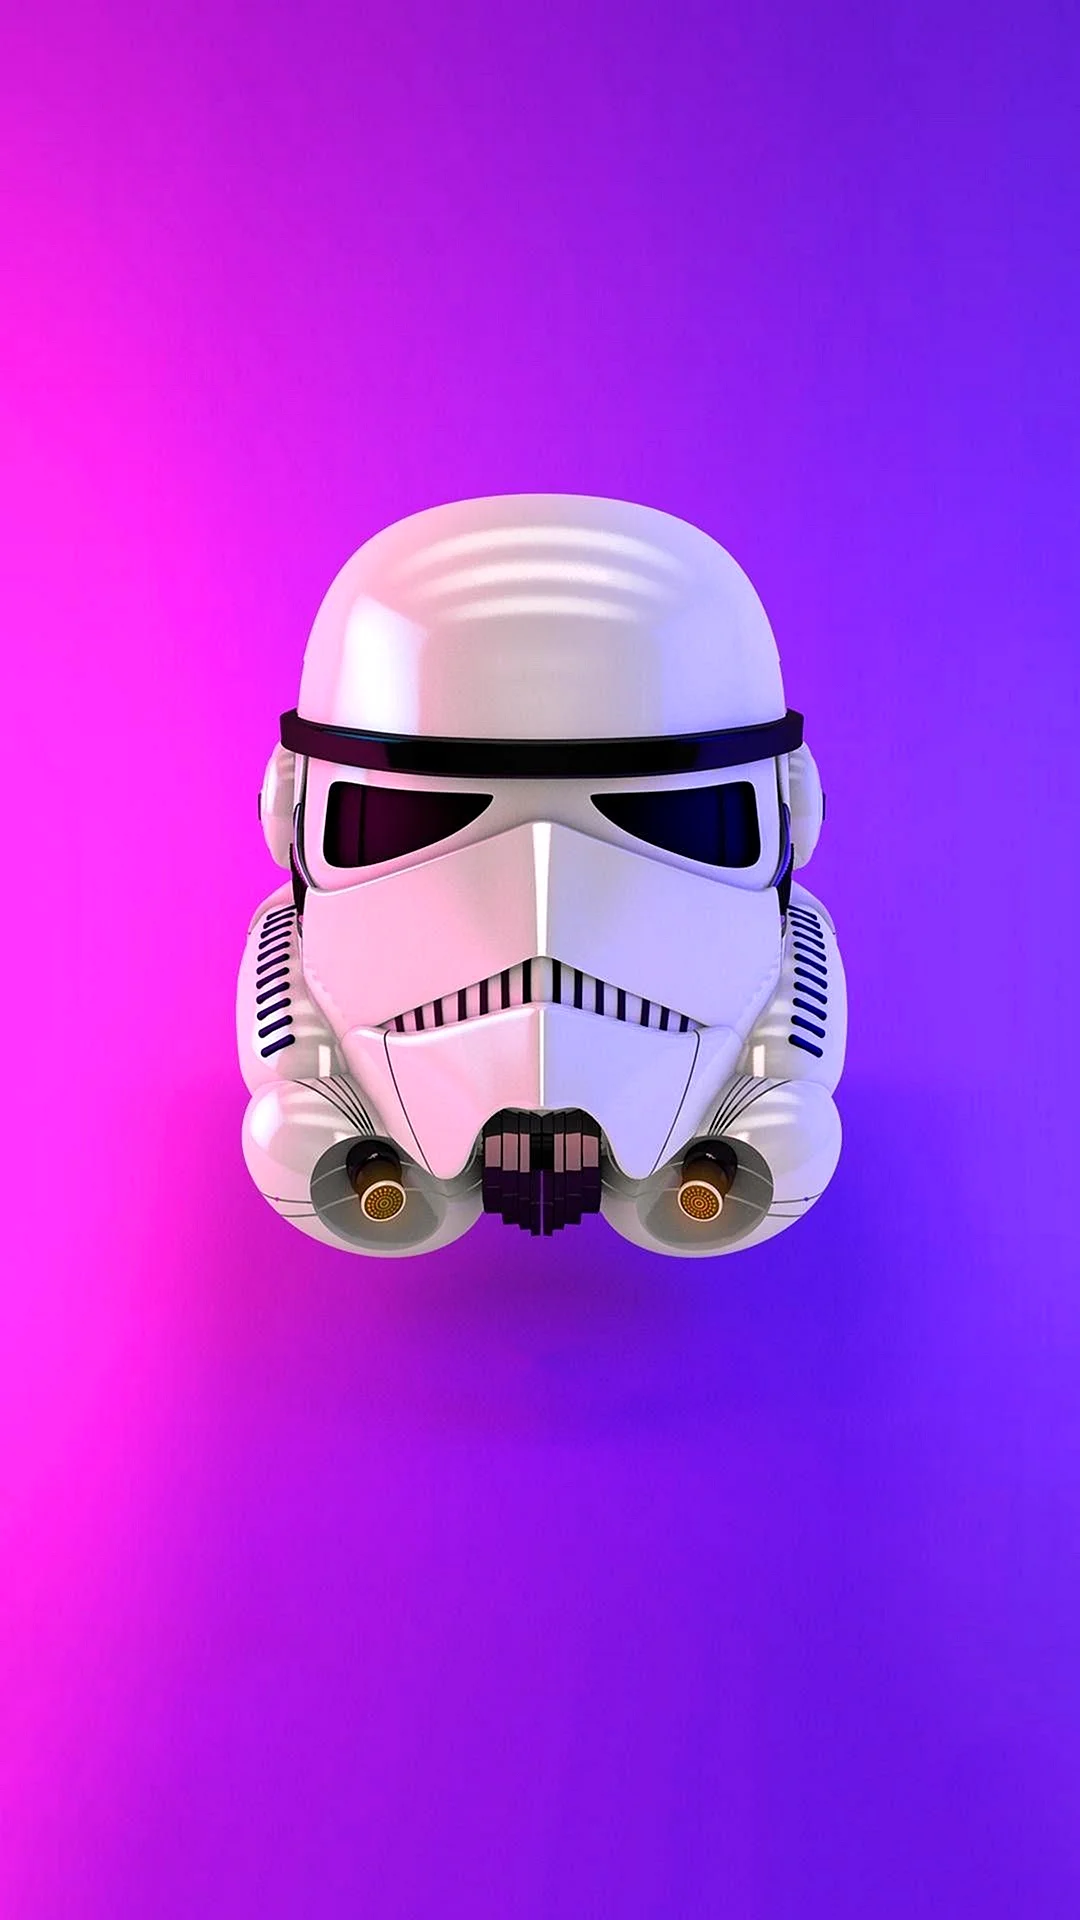 Star Wars Helmet Wallpaper For iPhone